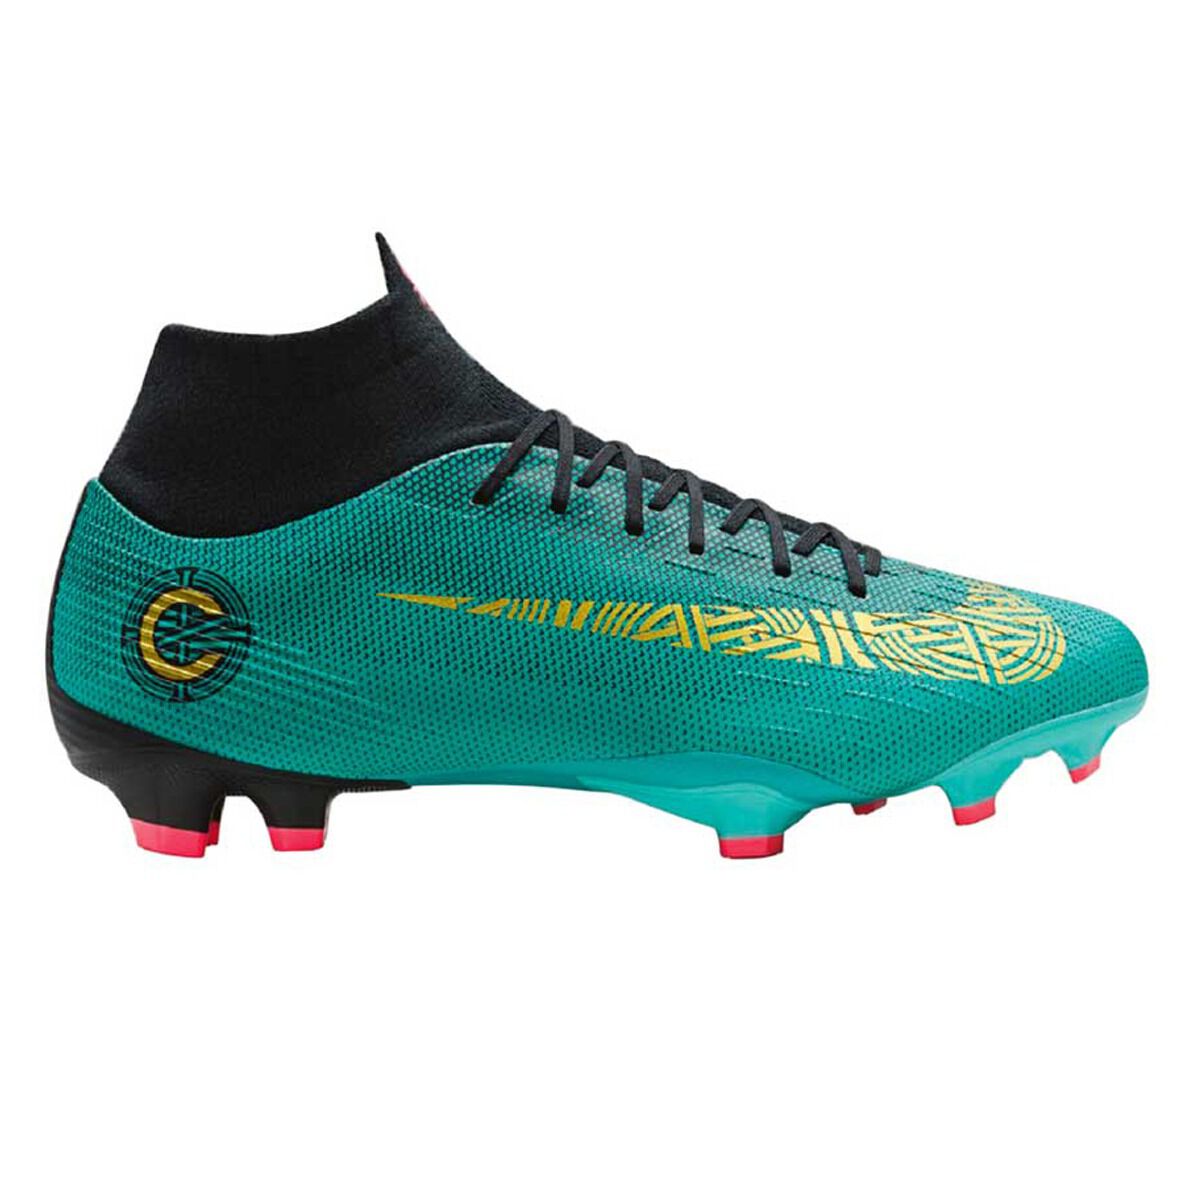 Nike Junior Mercurial Superfly V Cr7 Football Boots . eBay